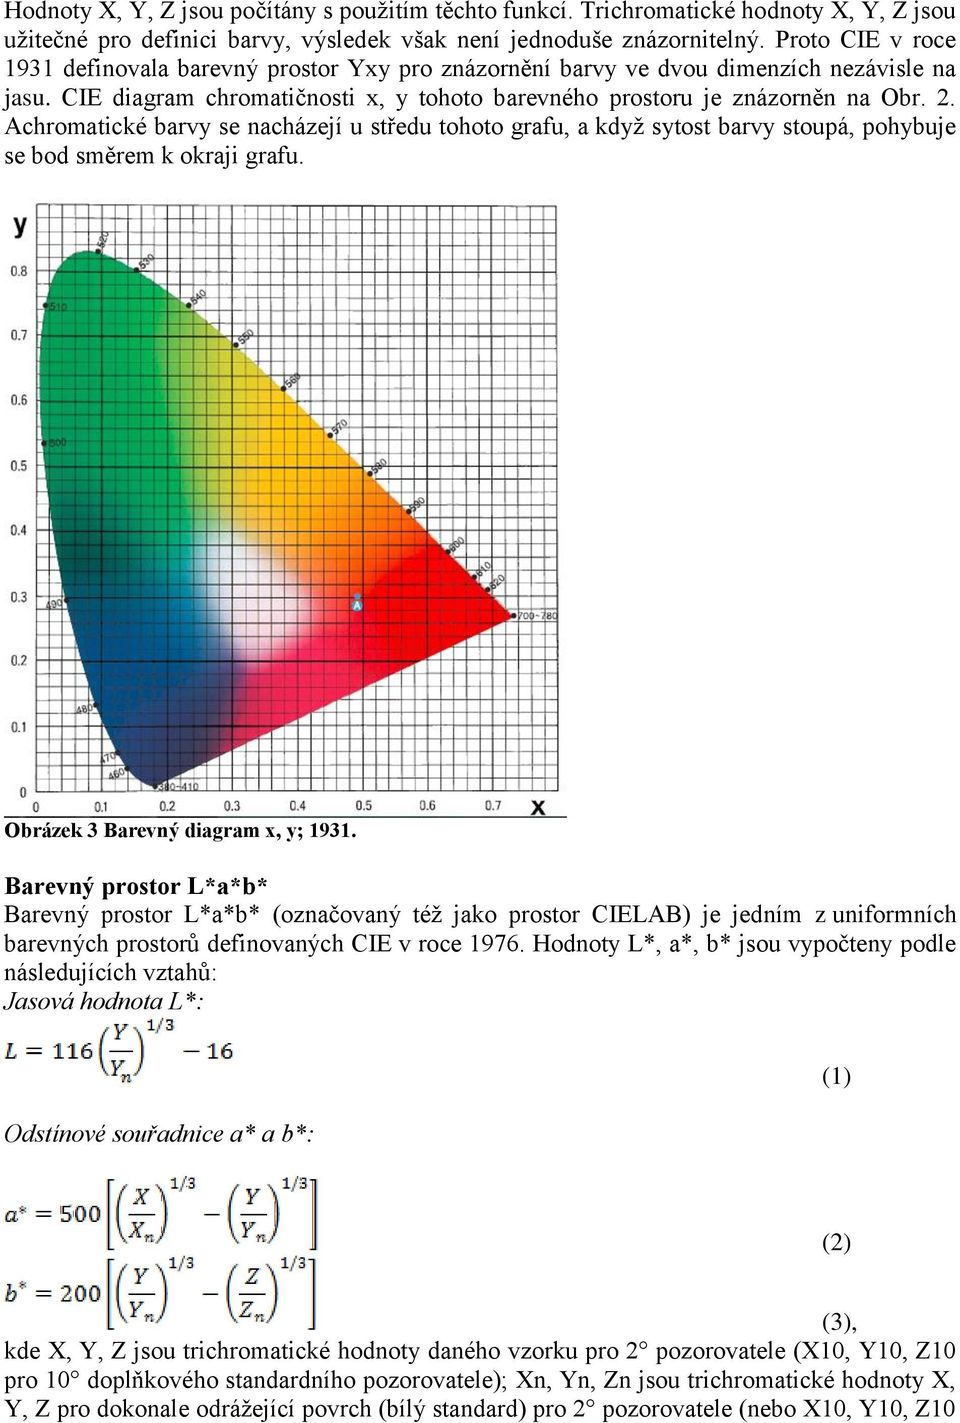 Achromatické barvy se nacházejí u středu tohoto grafu, a když sytost barvy stoupá, pohybuje se bod směrem k okraji grafu. Obrázek 3 Barevný diagram x, y; 1931.